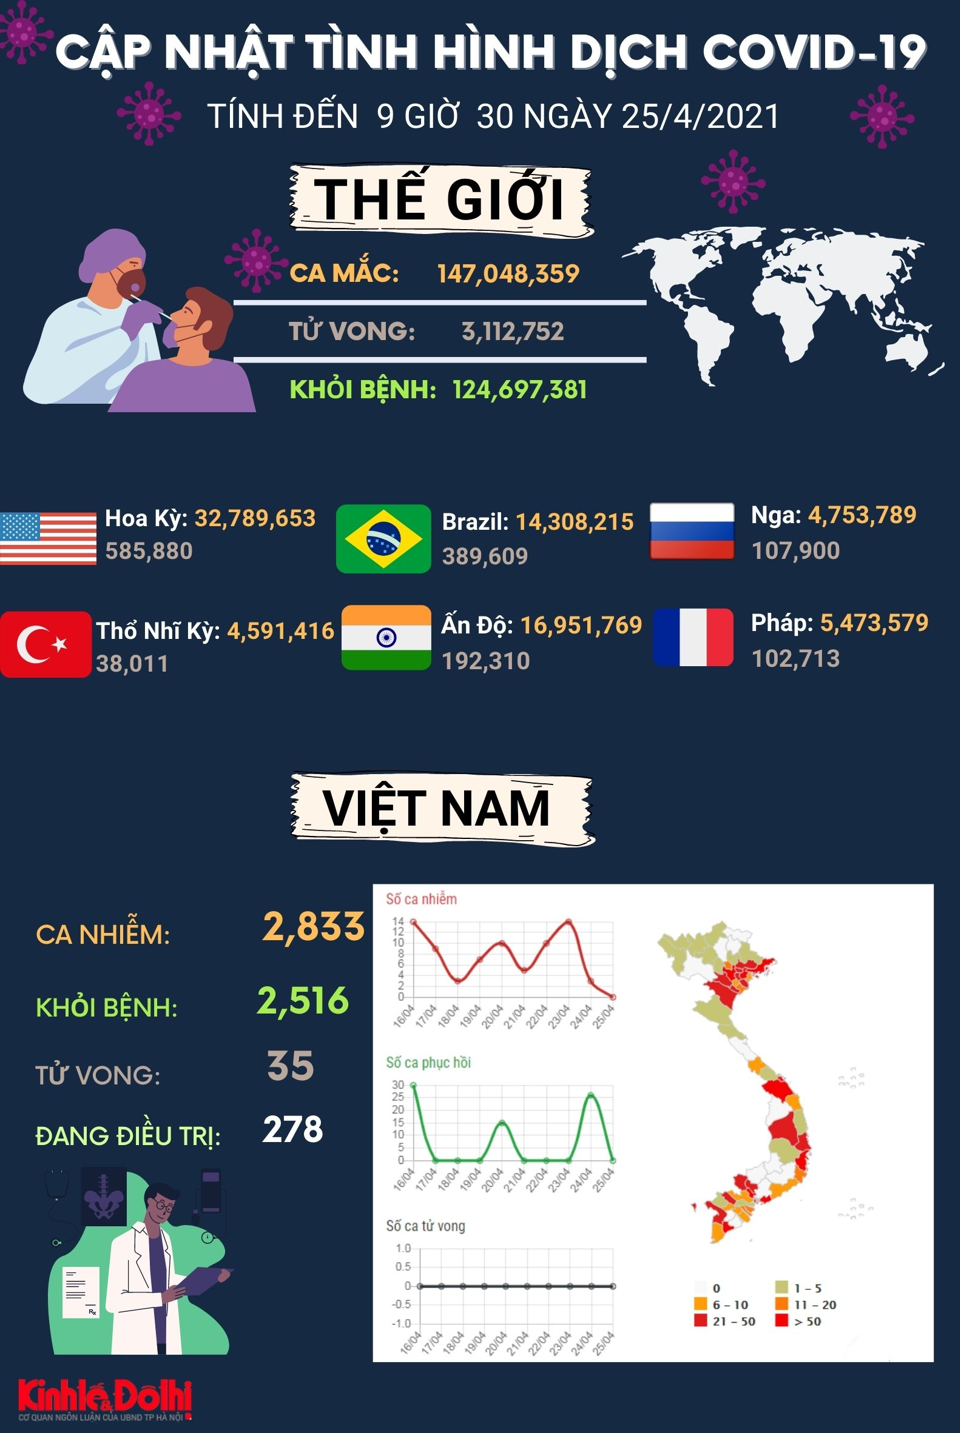 [Infographic] Dịch Covid-19 trên toàn cầu diễn biến xấu, số ca mắc mới tăng nhanh theo cấp số nhân - Ảnh 1